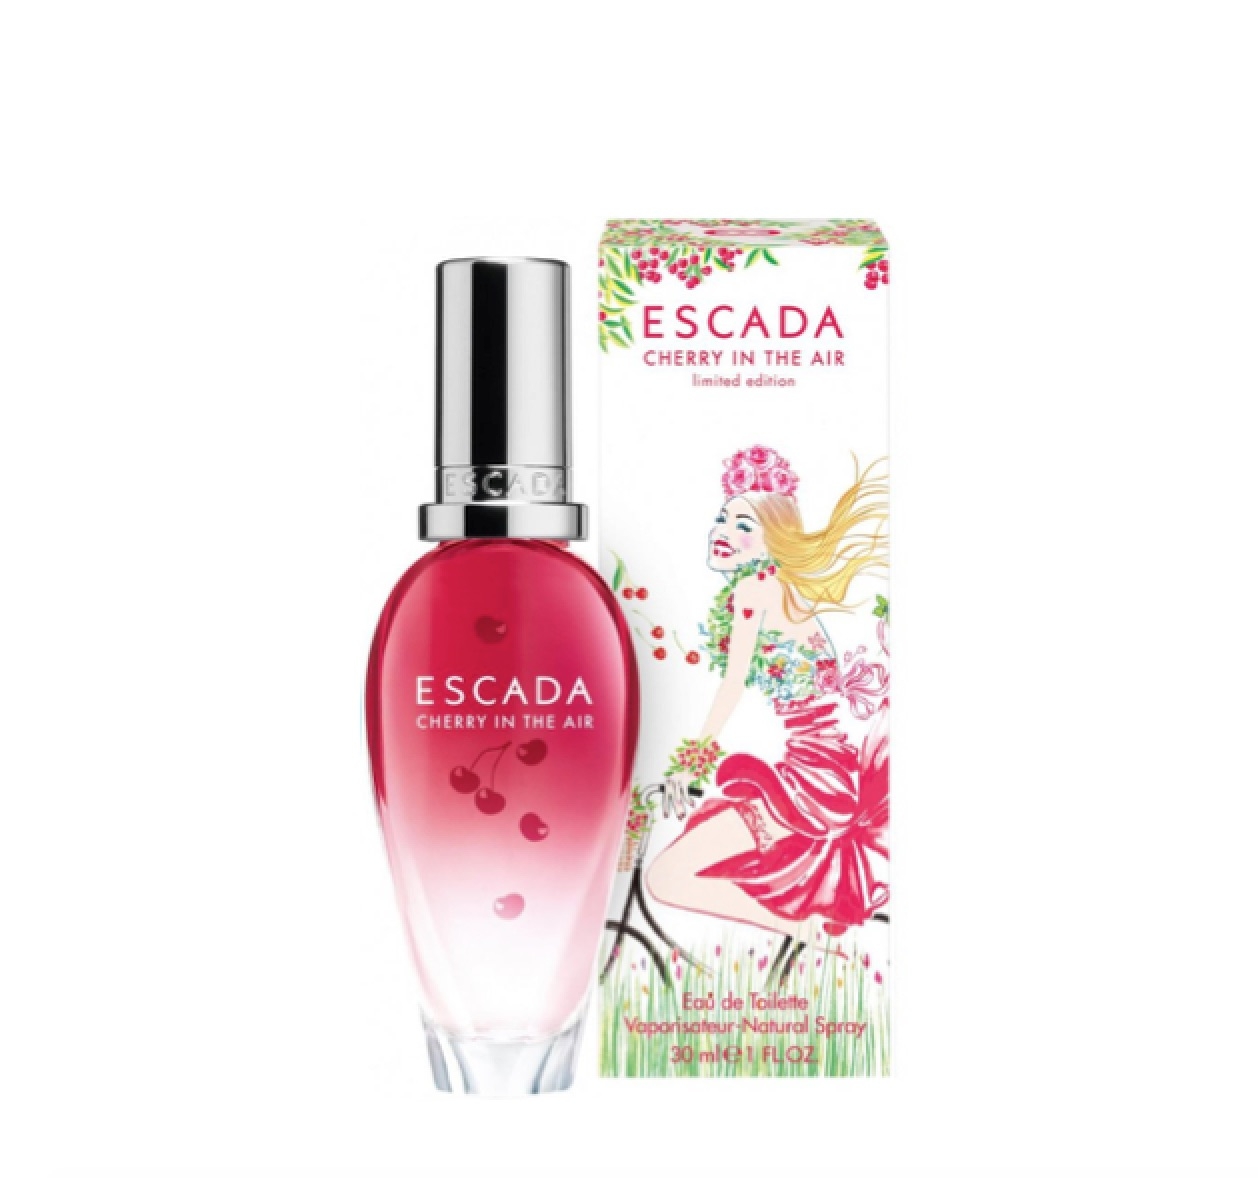 Escada Cherry In The Air Eau de Toilette 30ml – Perfume Essence